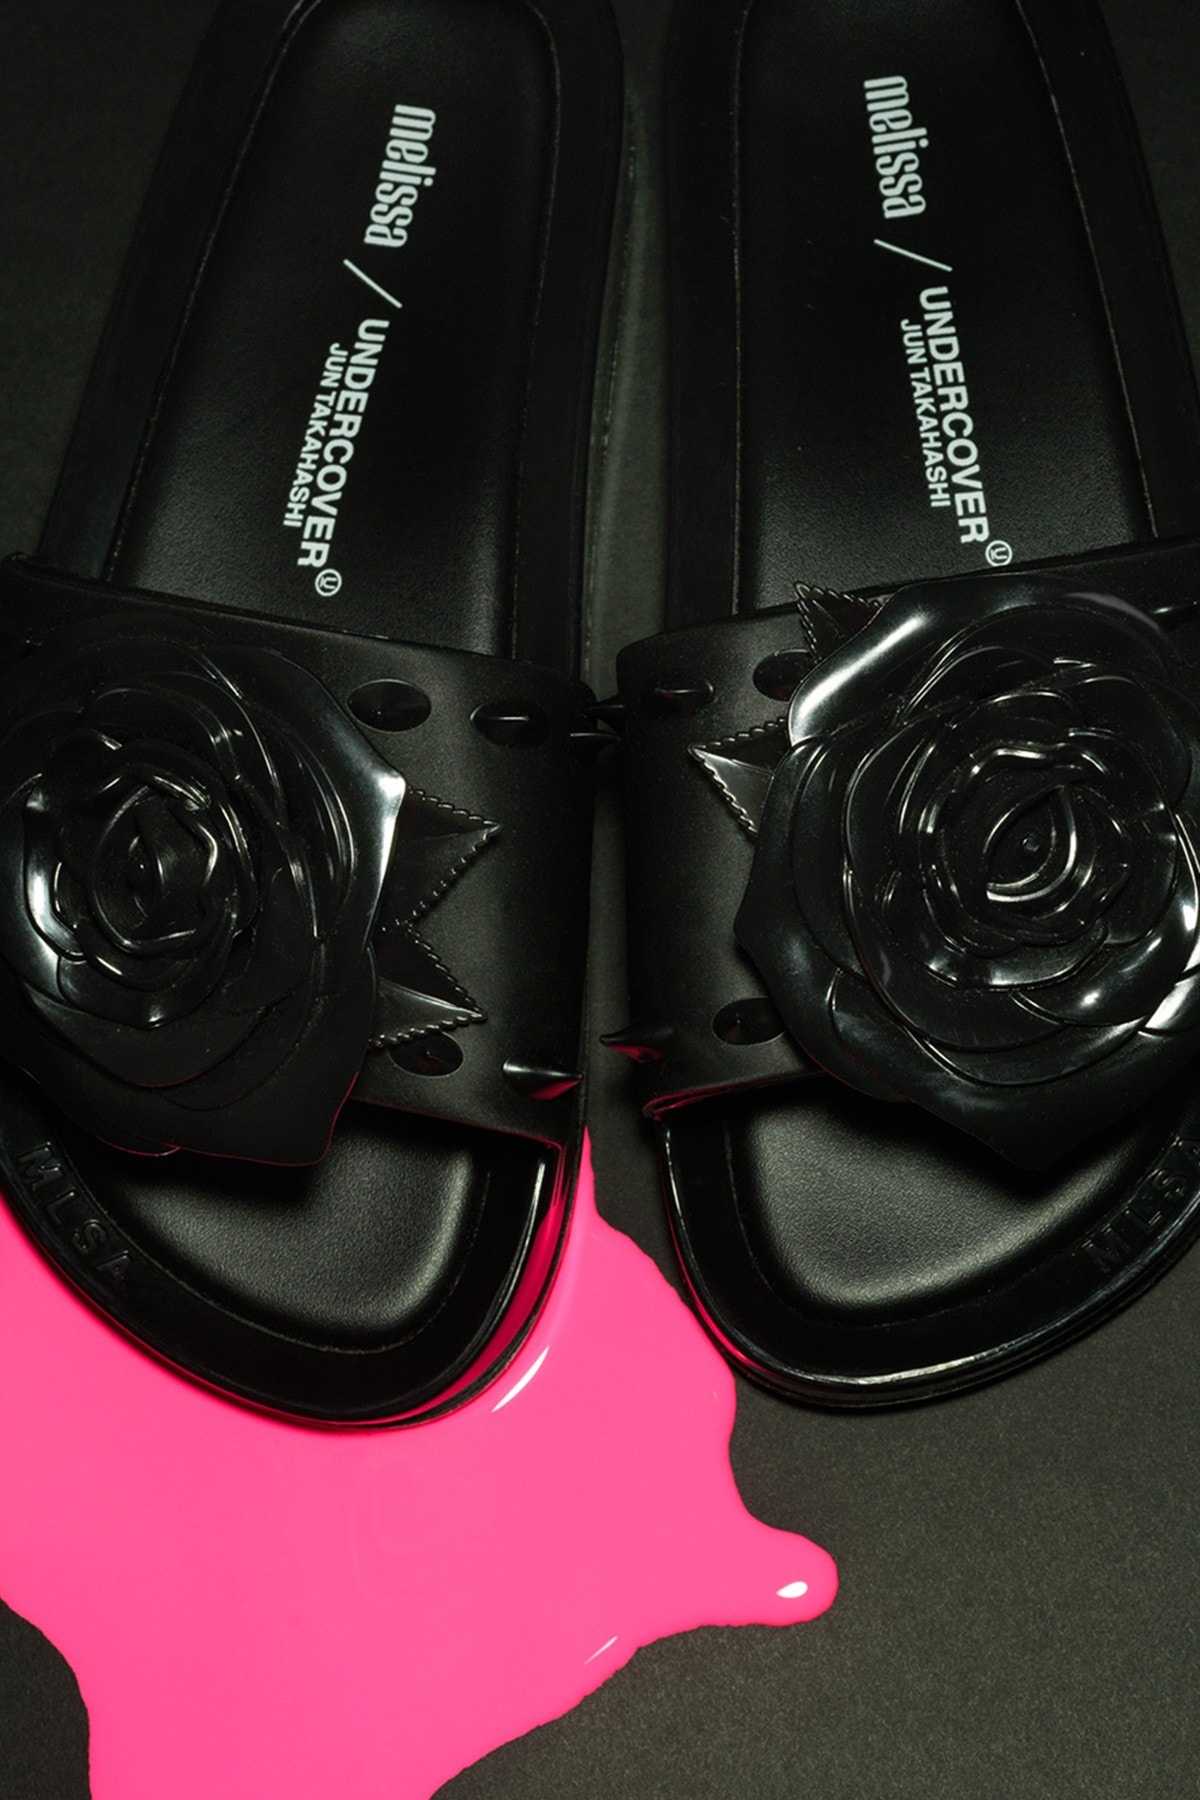 UNDERCOVER 攜手 Melissa 推出最新鞋履、包款聯名系列